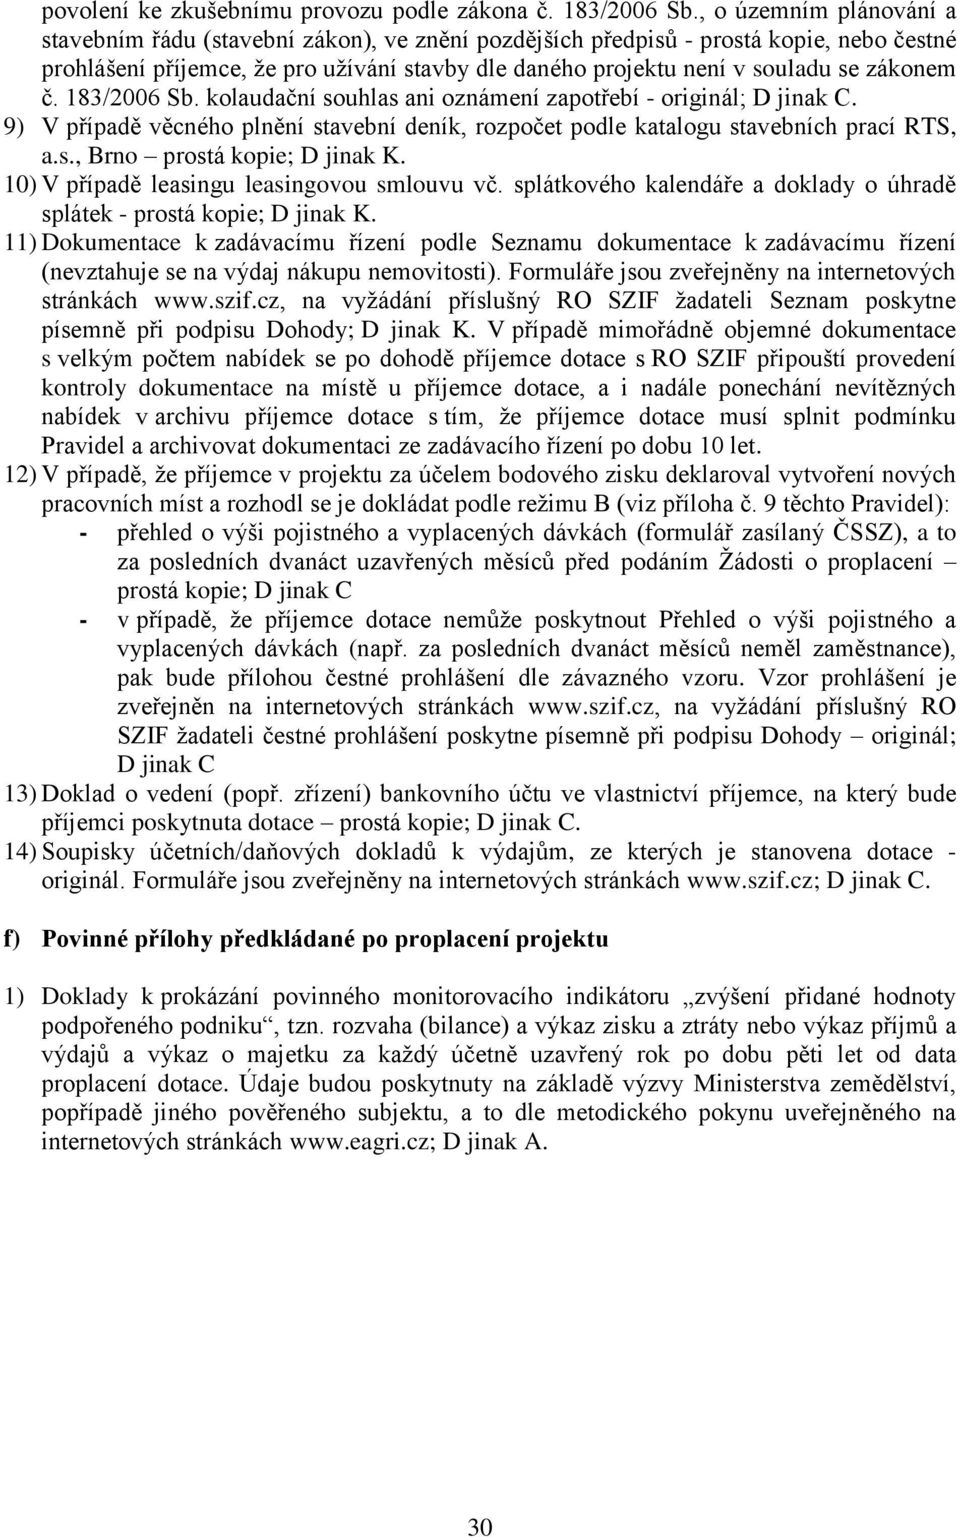 zákonem č. 183/2006 Sb. kolaudační souhlas ani oznámení zapotřebí - originál; D jinak C. 9) V případě věcného plnění stavební deník, rozpočet podle katalogu stavebních prací RTS, a.s., Brno prostá kopie; D jinak K.